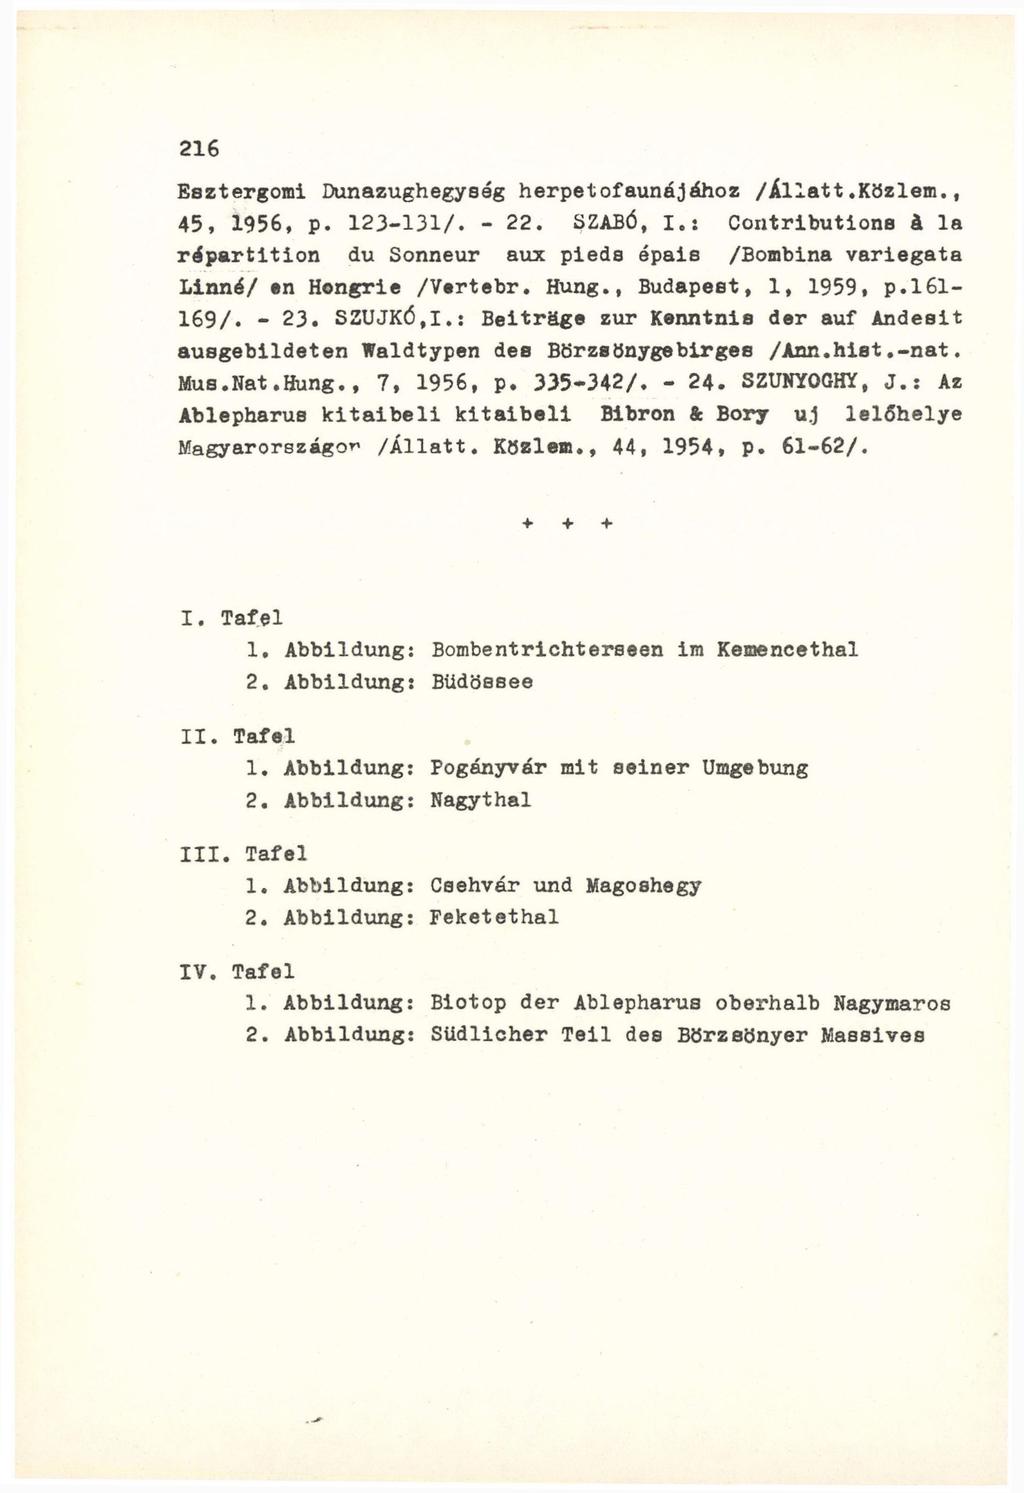 Esztergomi Dunazughegység herpetofaunájához /illatt.közlem., 45, 1956, p. 123-131/. - 22. SZABÓ, I.